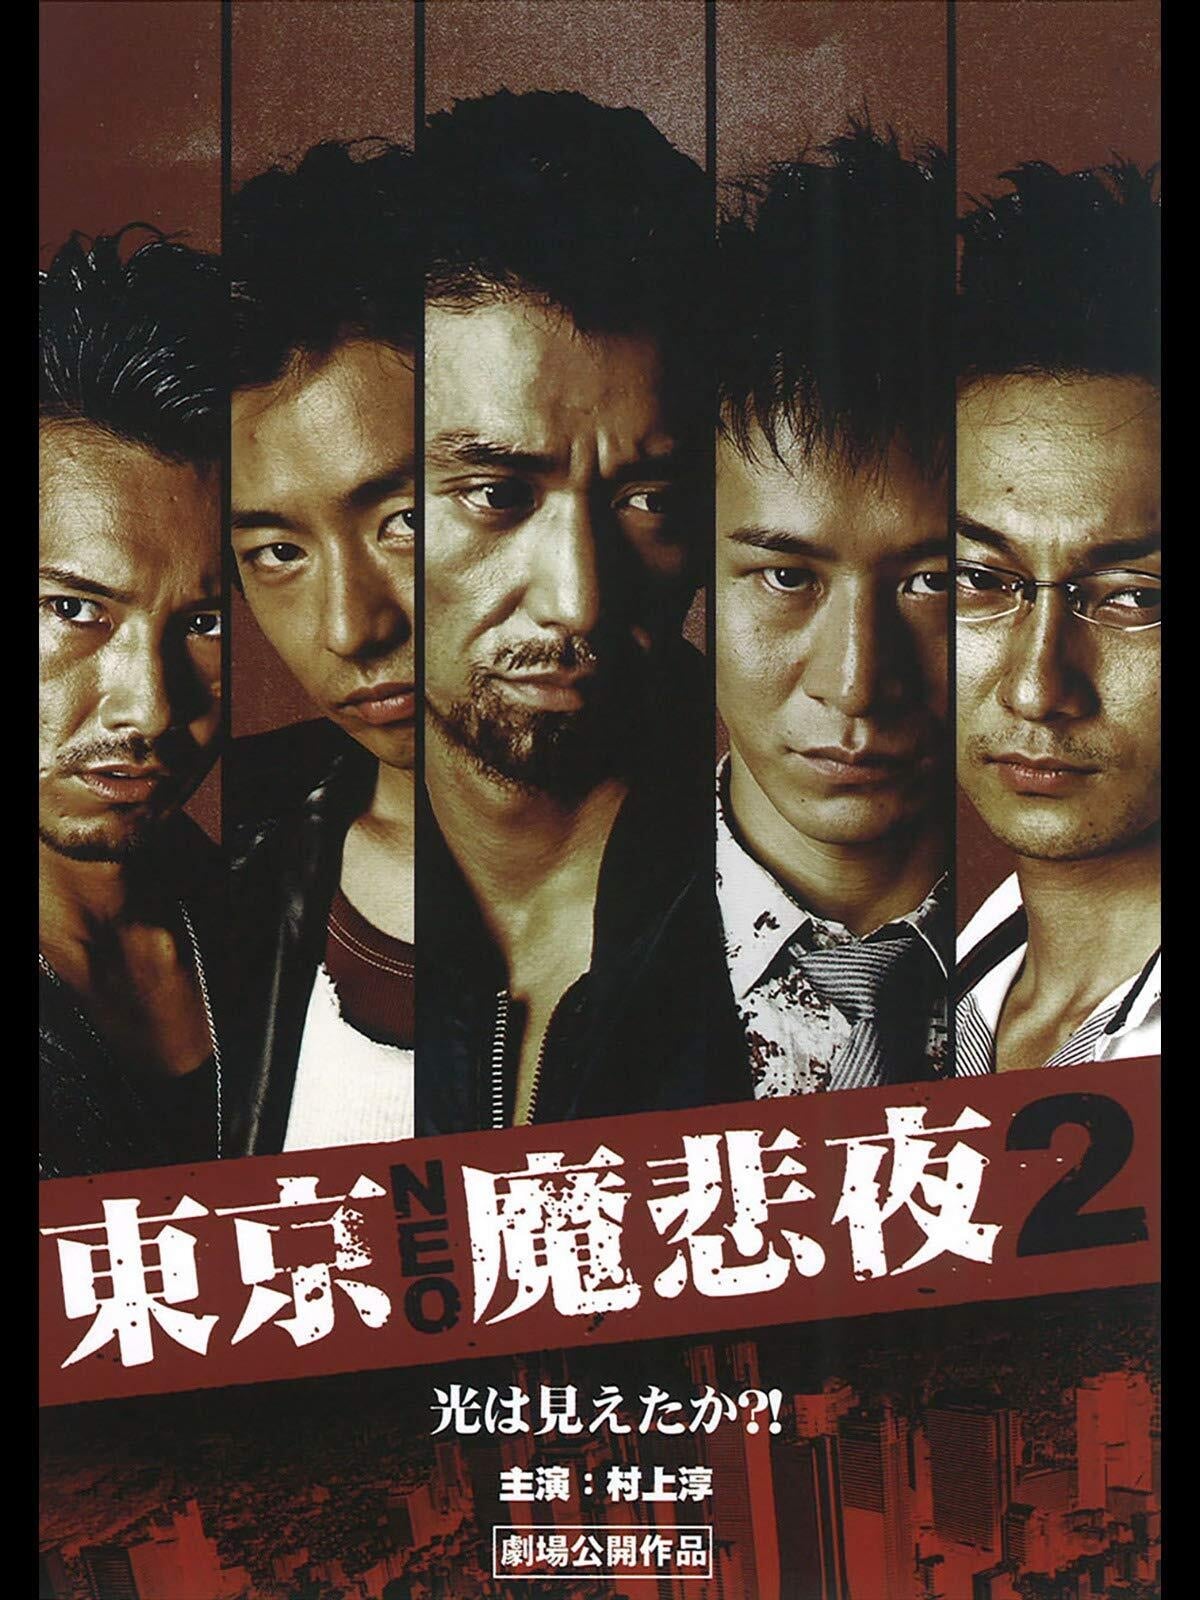 Tokyo Neo Mafia 2 (2009)